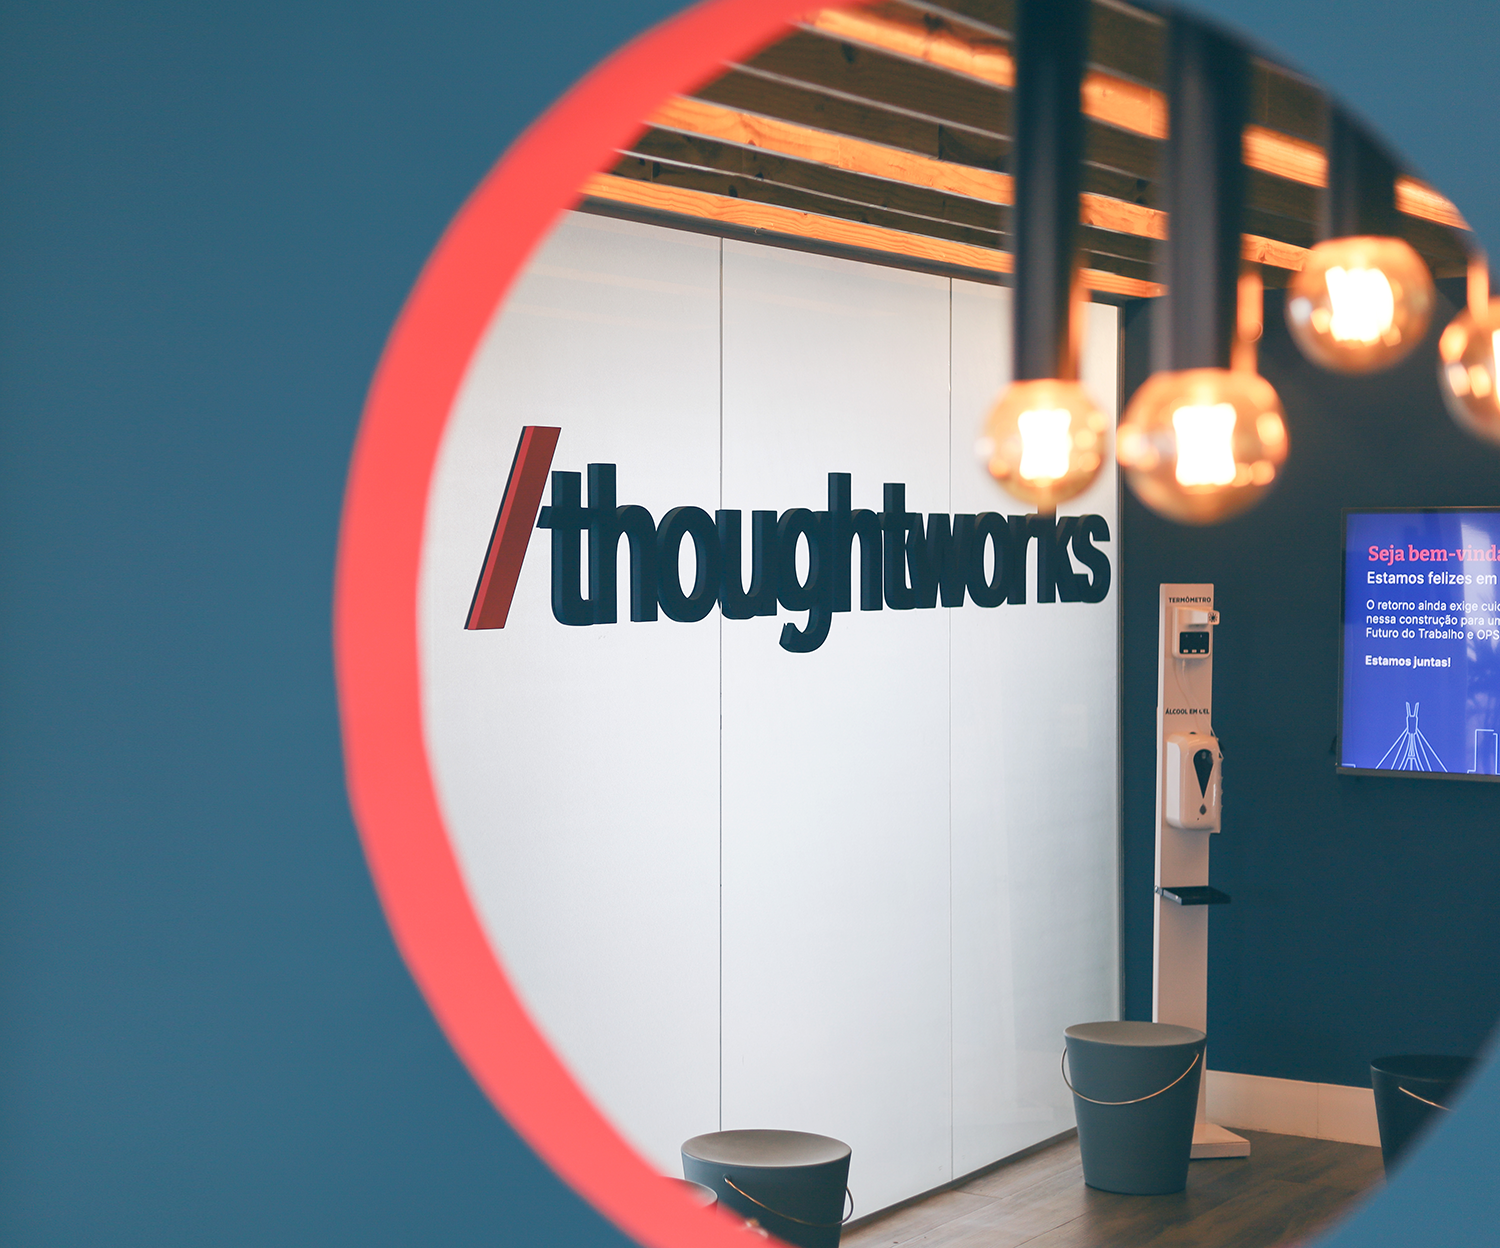 Imagem do escritório da Thoughtworks em Recife, mostrando a recepção com o logo na parede, uma televisão e luzes iluminando o ambiente.